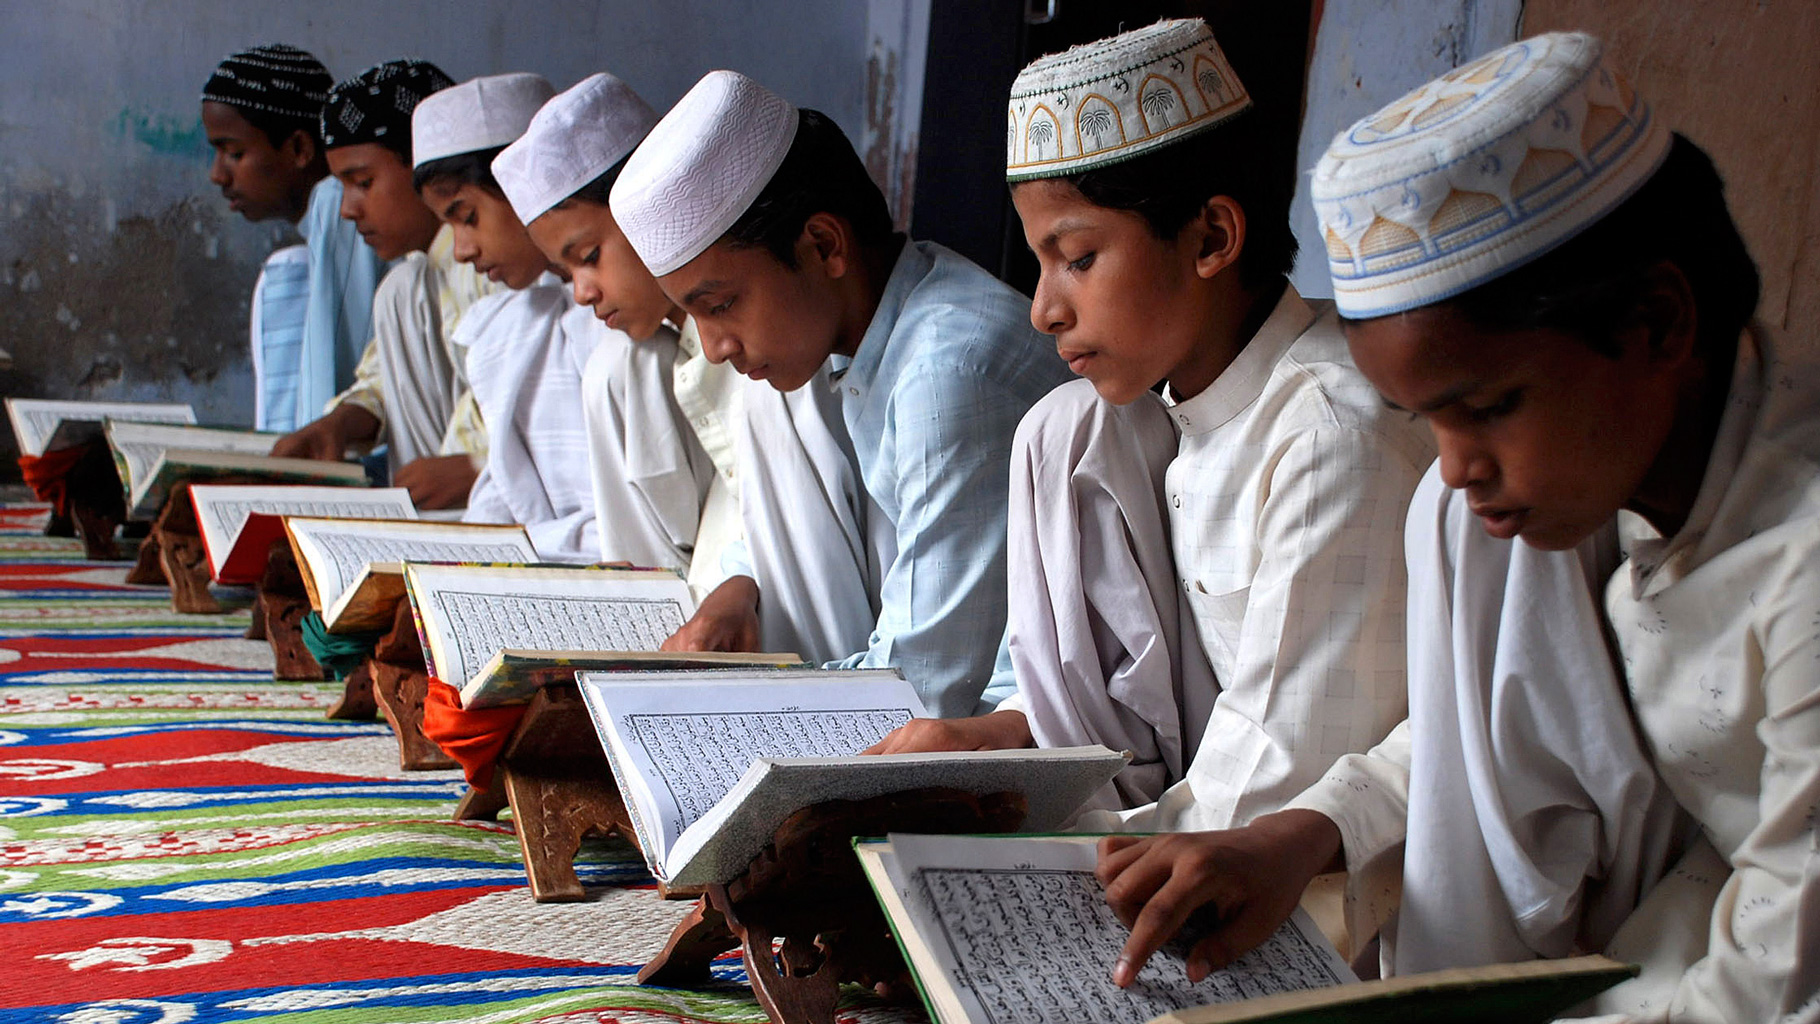 مدارس اسلامیہ کا نصاب